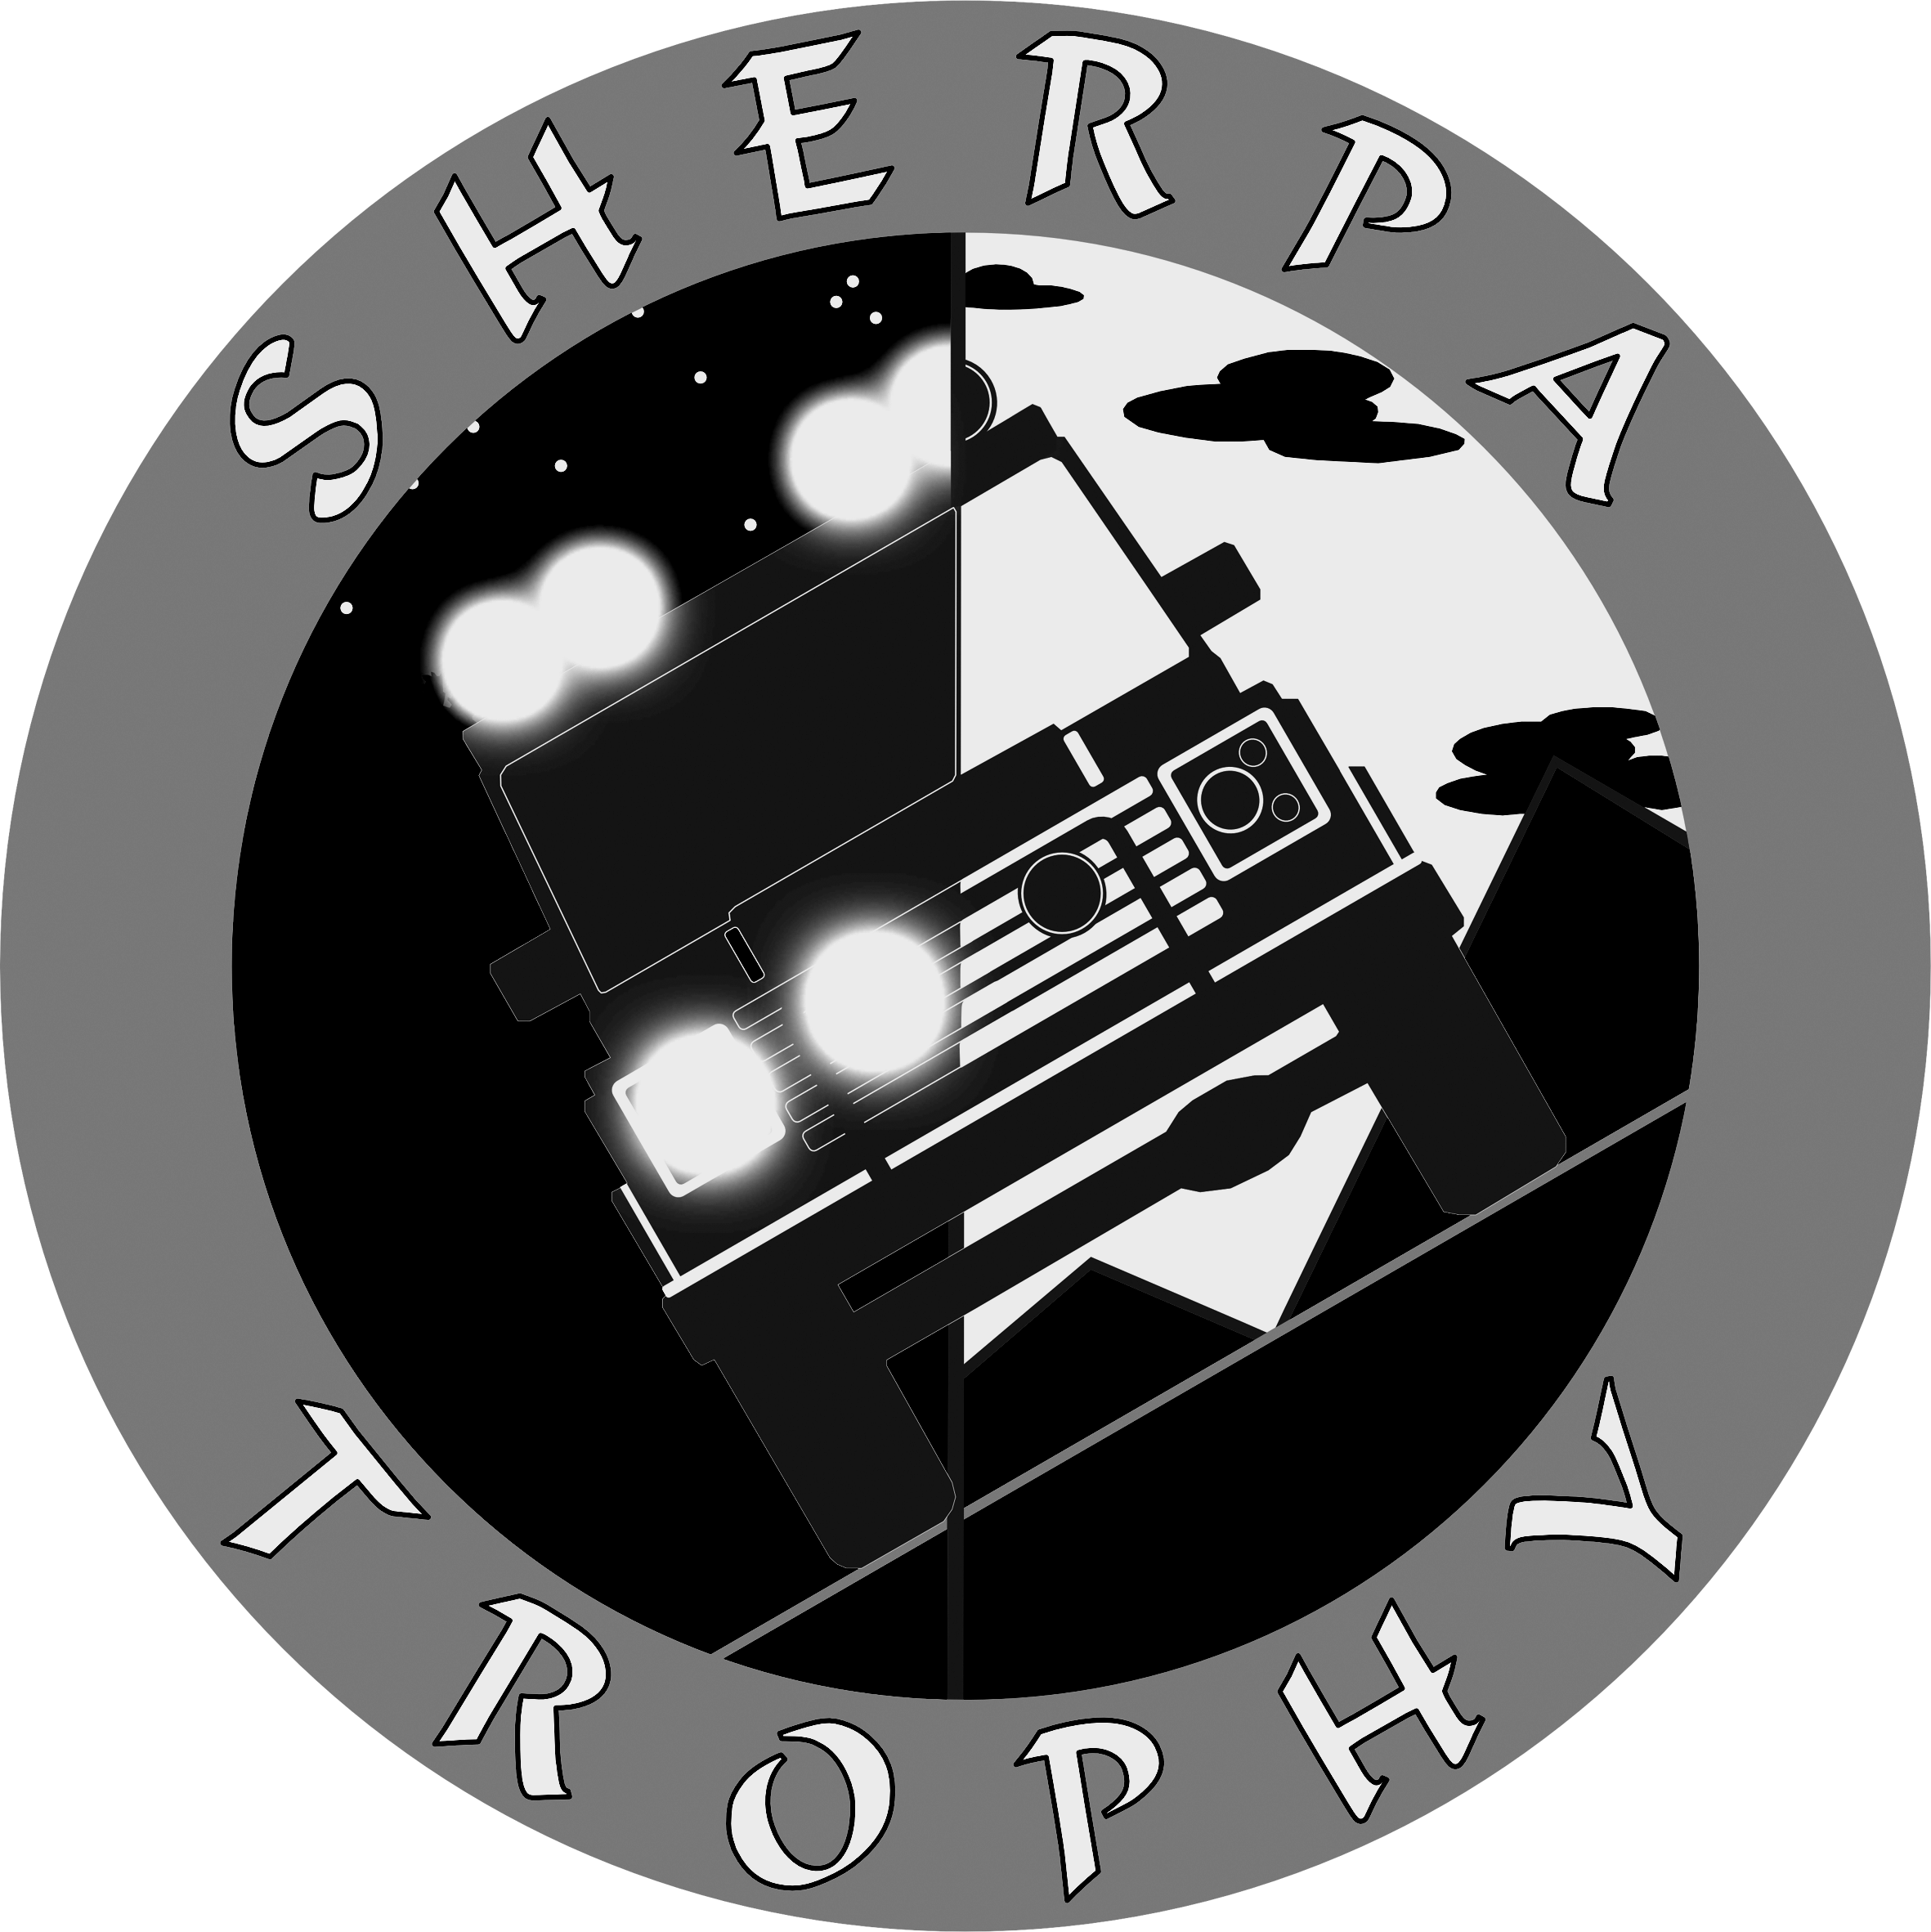 SHERPA Trophy